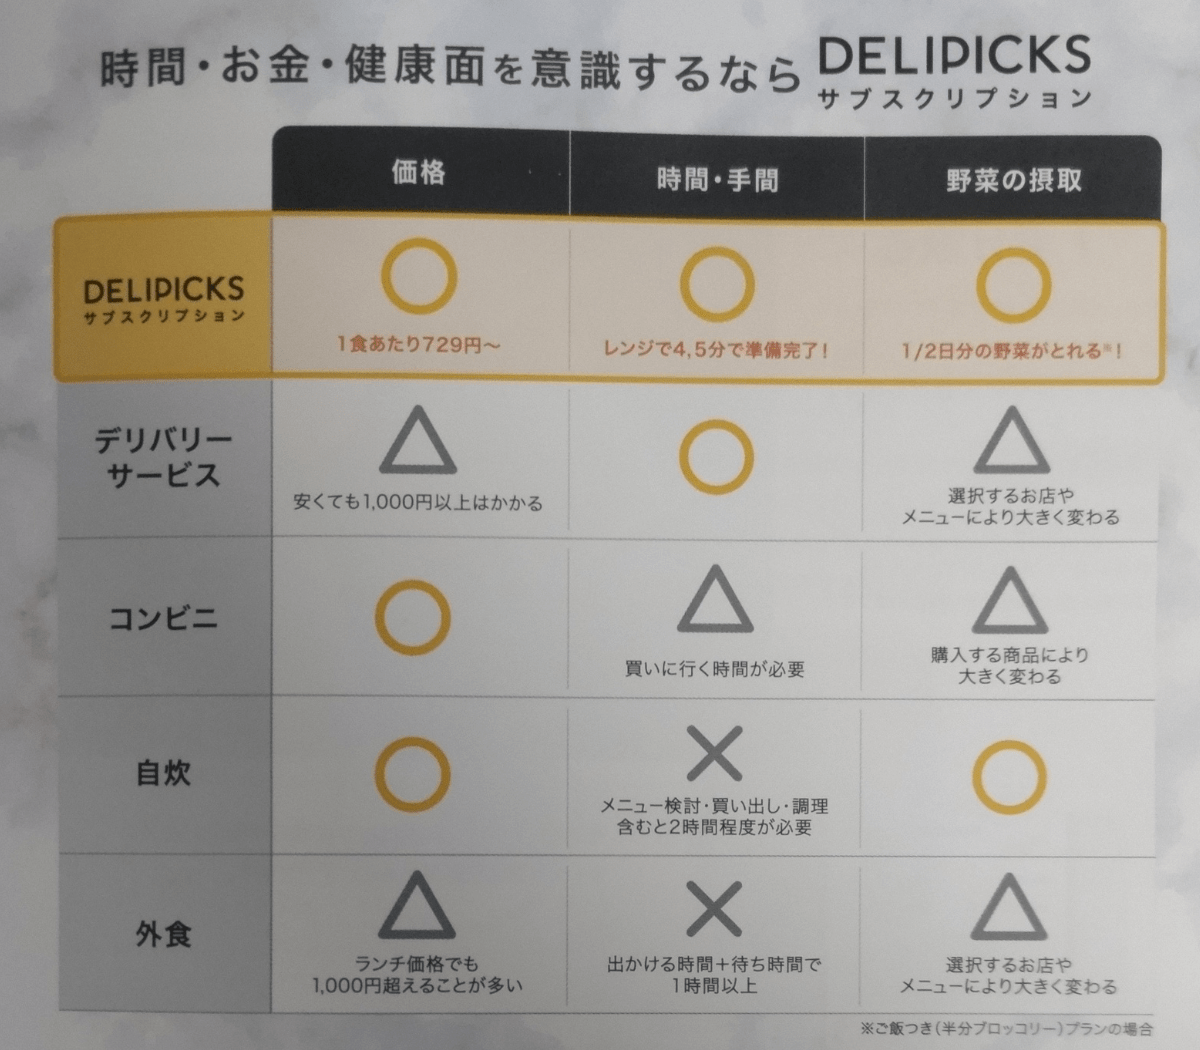 DELIPICKSサブスクリプションのご利用ガイド